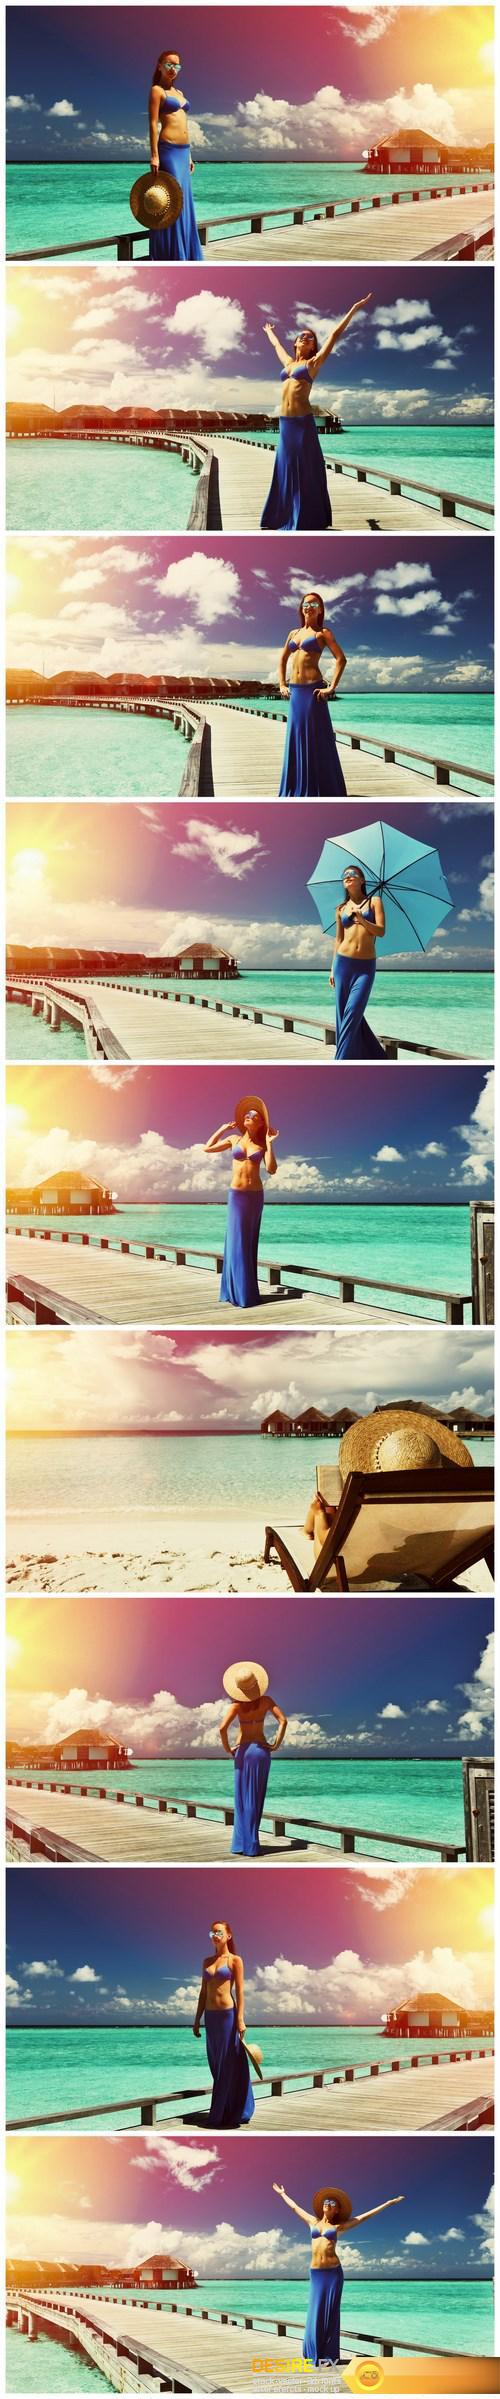 Woman on a beach jetty at Maldives - 9xUHQ JPEG Photo Stock